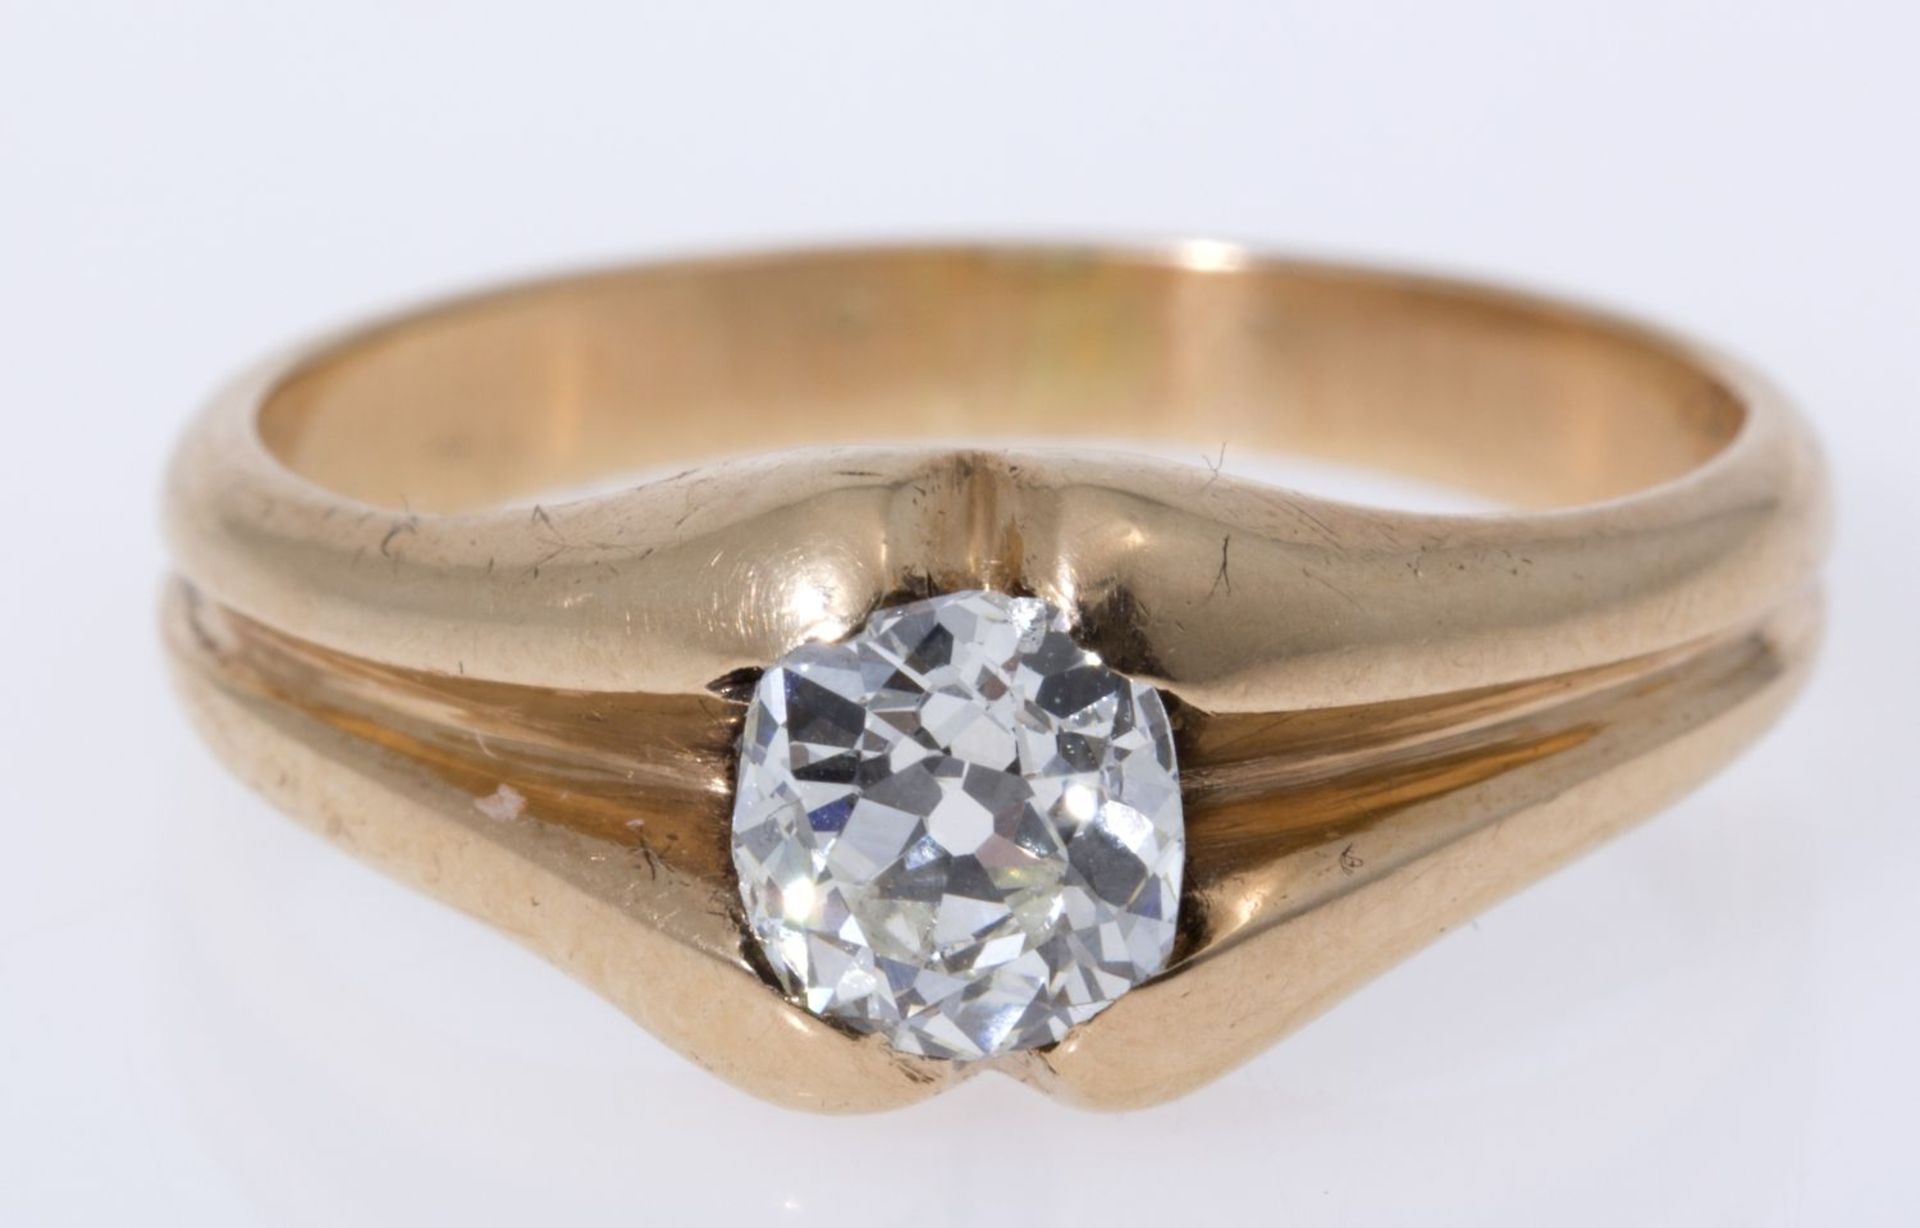 Solitär-Diamant-Ring Gelbgold 585 (geprüft). Ausgefasst mit Altschliff-Dia. ca. 0,60-0,70 c - Bild 2 aus 3